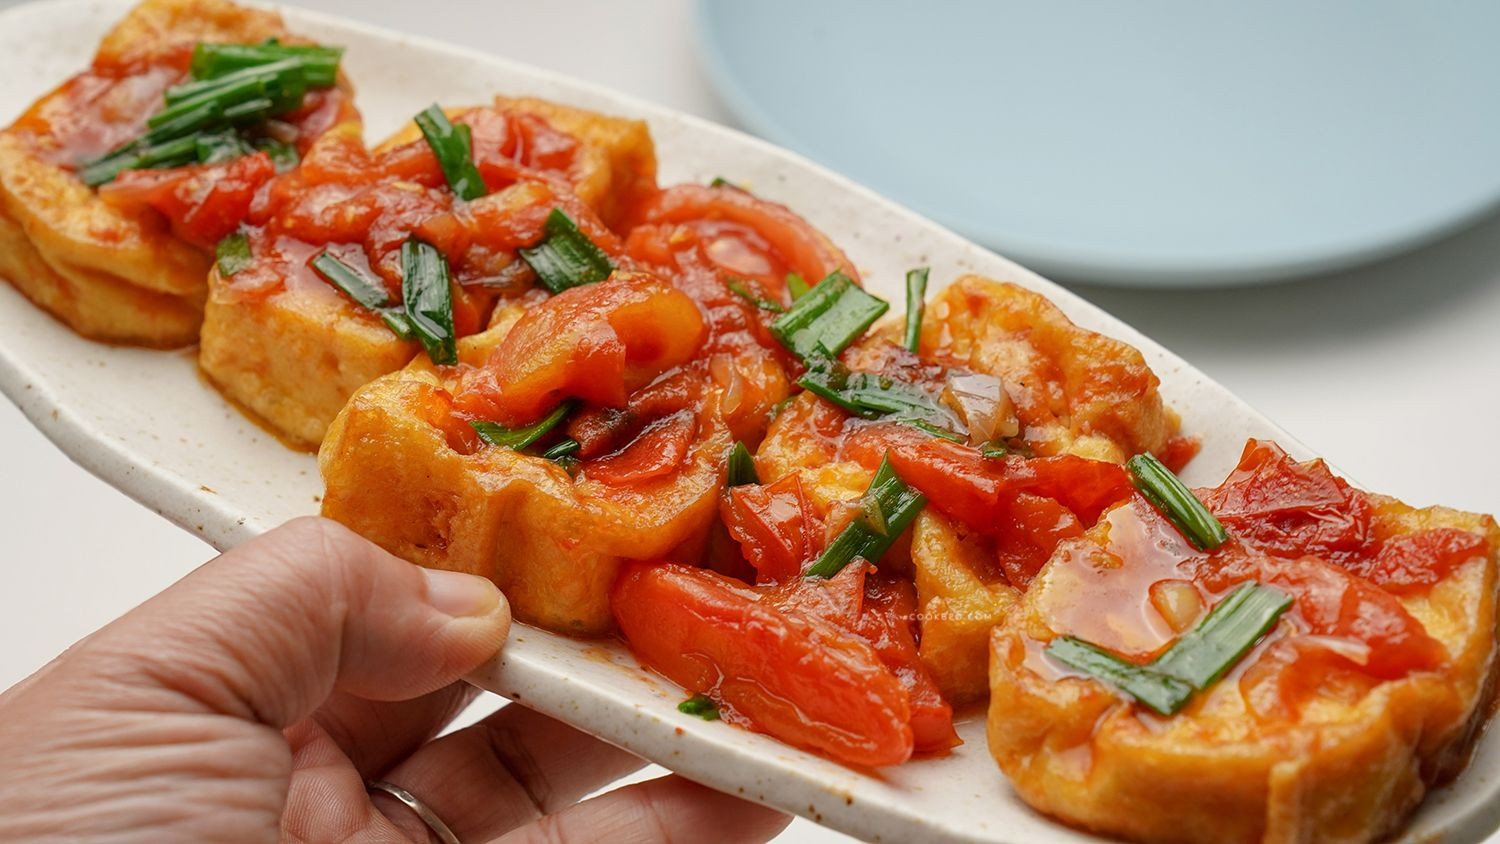 Món đậu sốt cà chua bao nhiêu calo? Đang giảm cân có ăn được không?